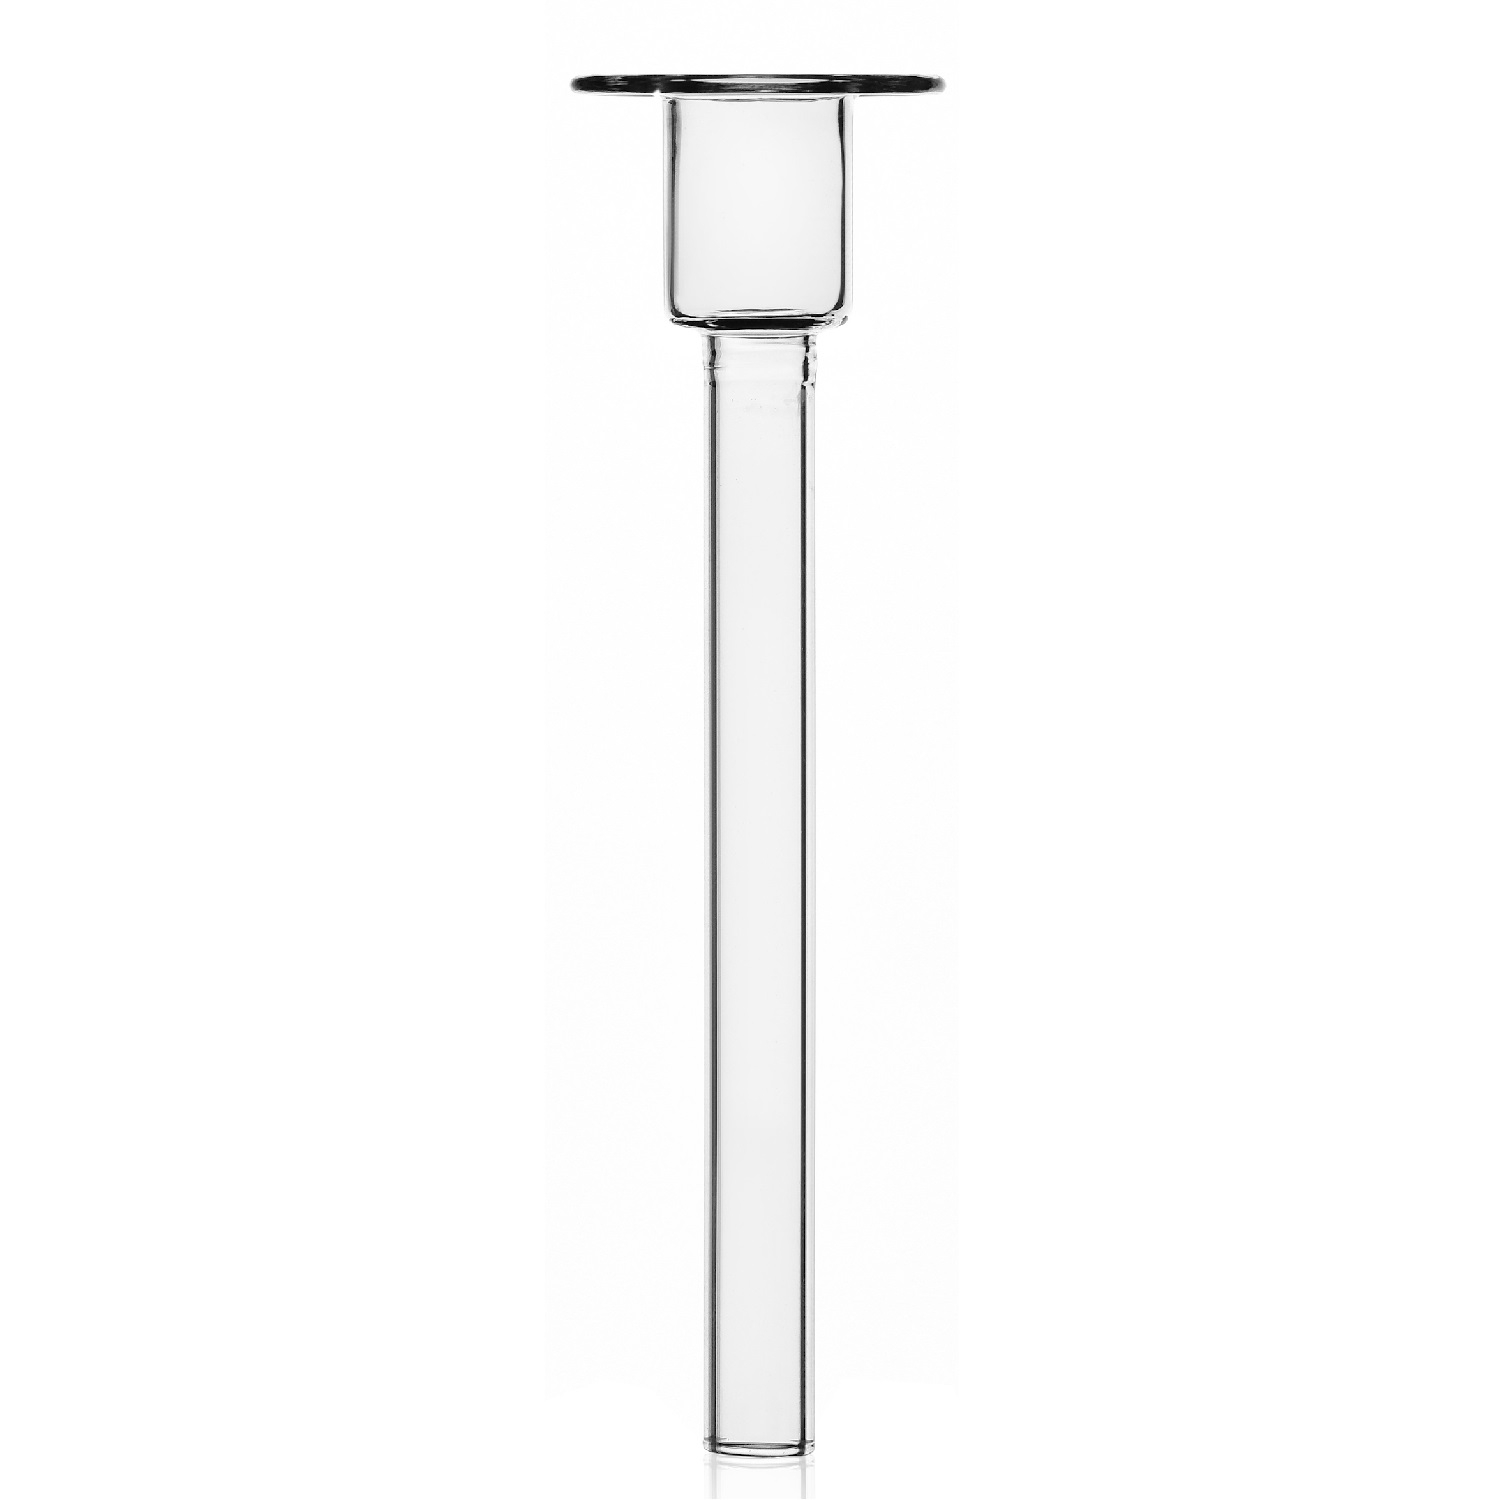 Designové svícny Helios Short Candleholder (výška 18 cm)